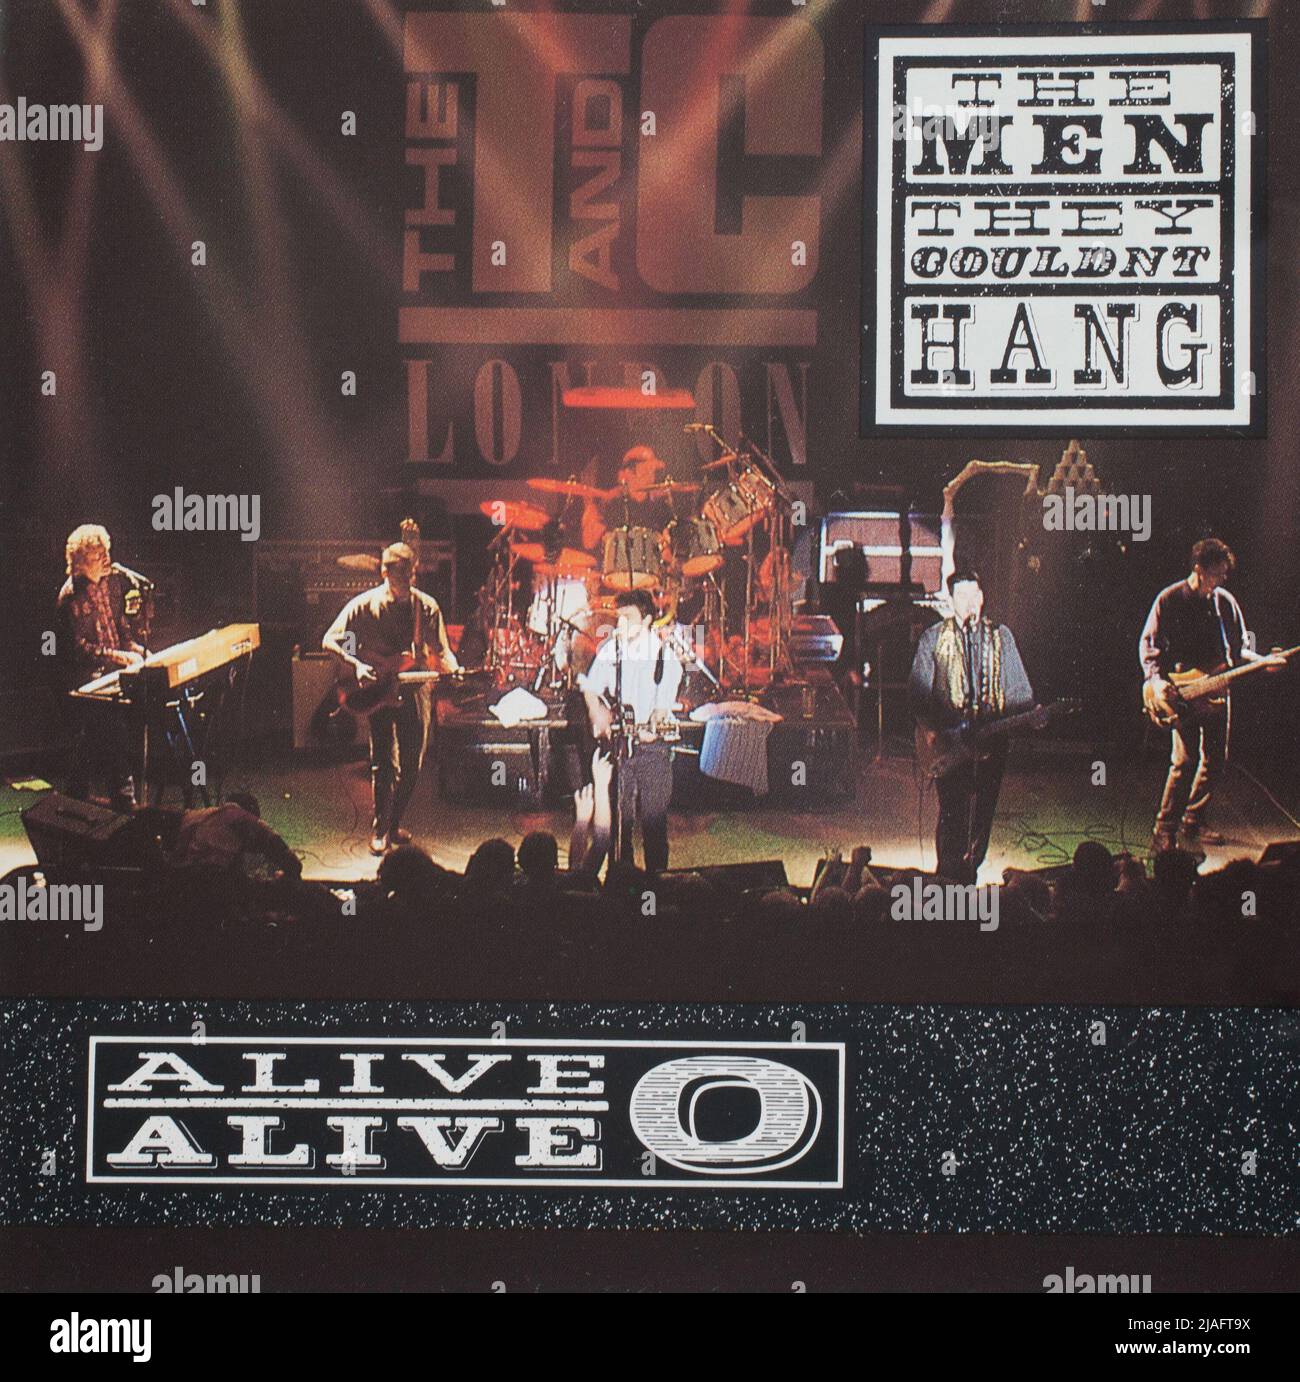 Das cd-Album Cover zu Alive Alive O von den Männern, die sie nicht hängen konnten Stockfoto